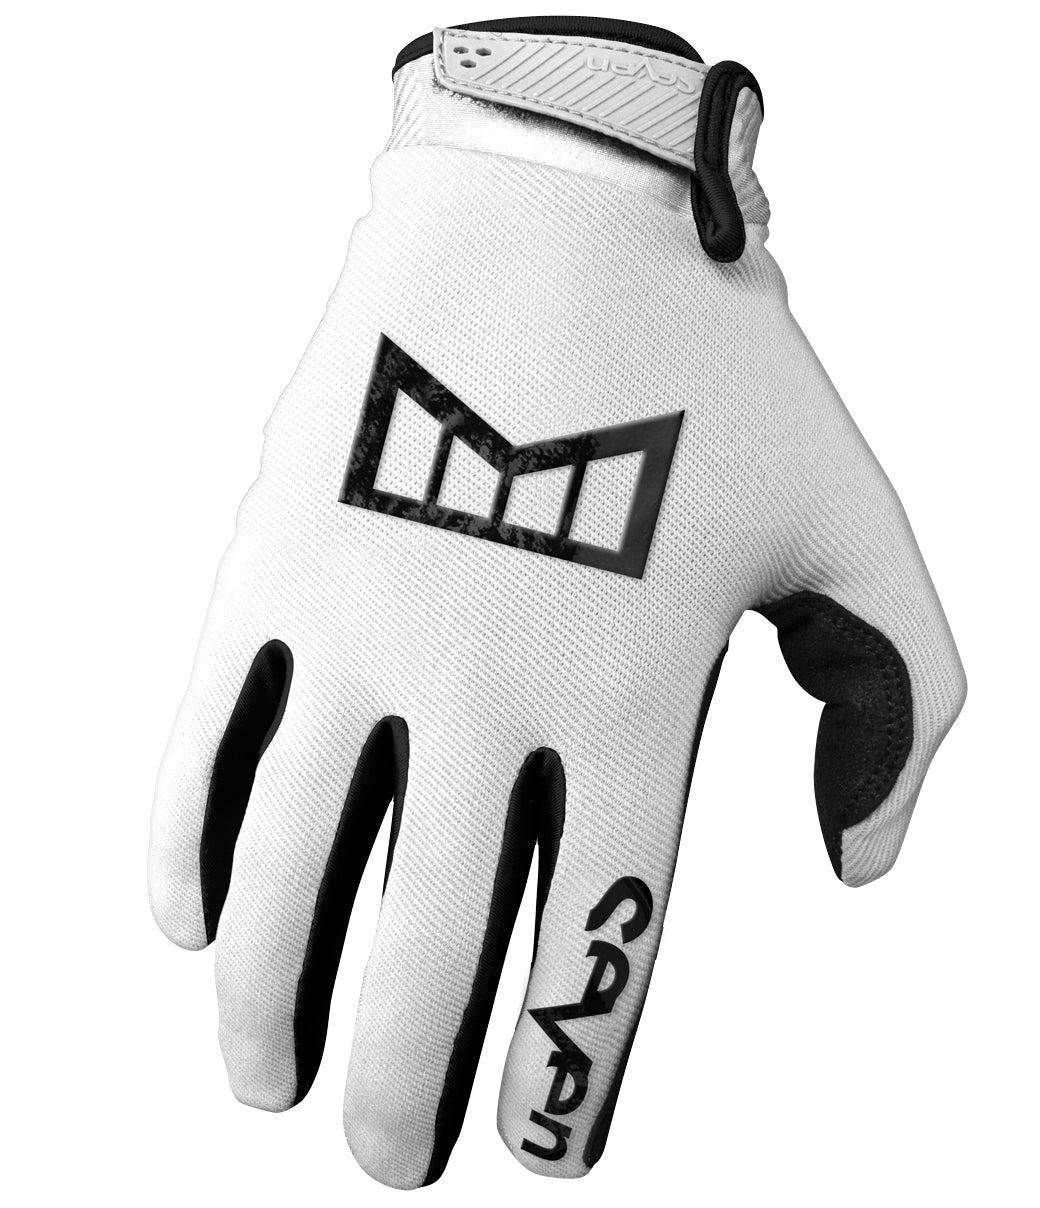 Youth Annex Melin Glove - Black/White